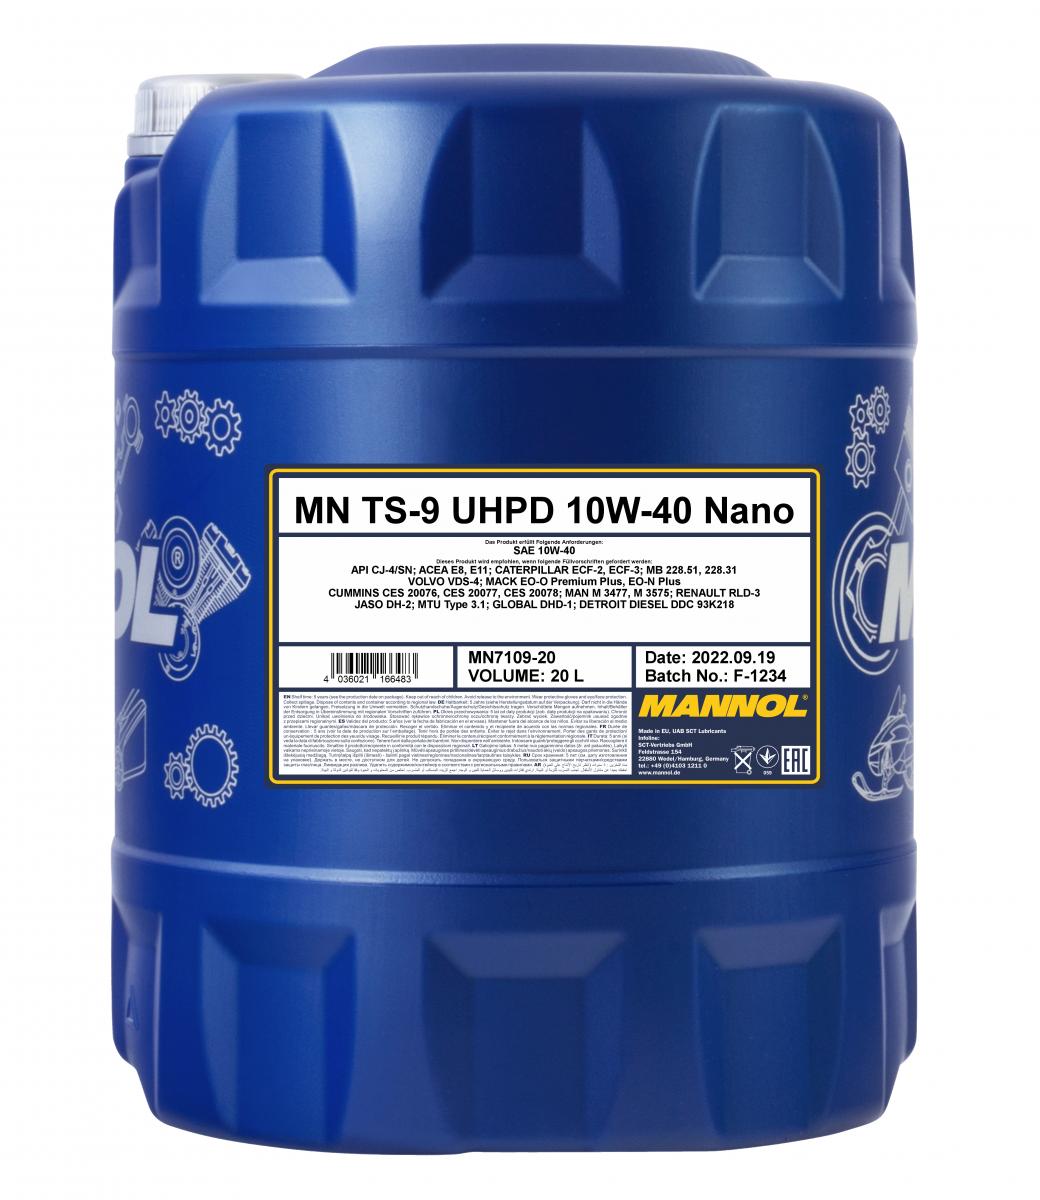 MN TS-9 UHPD 10W-40 Nano